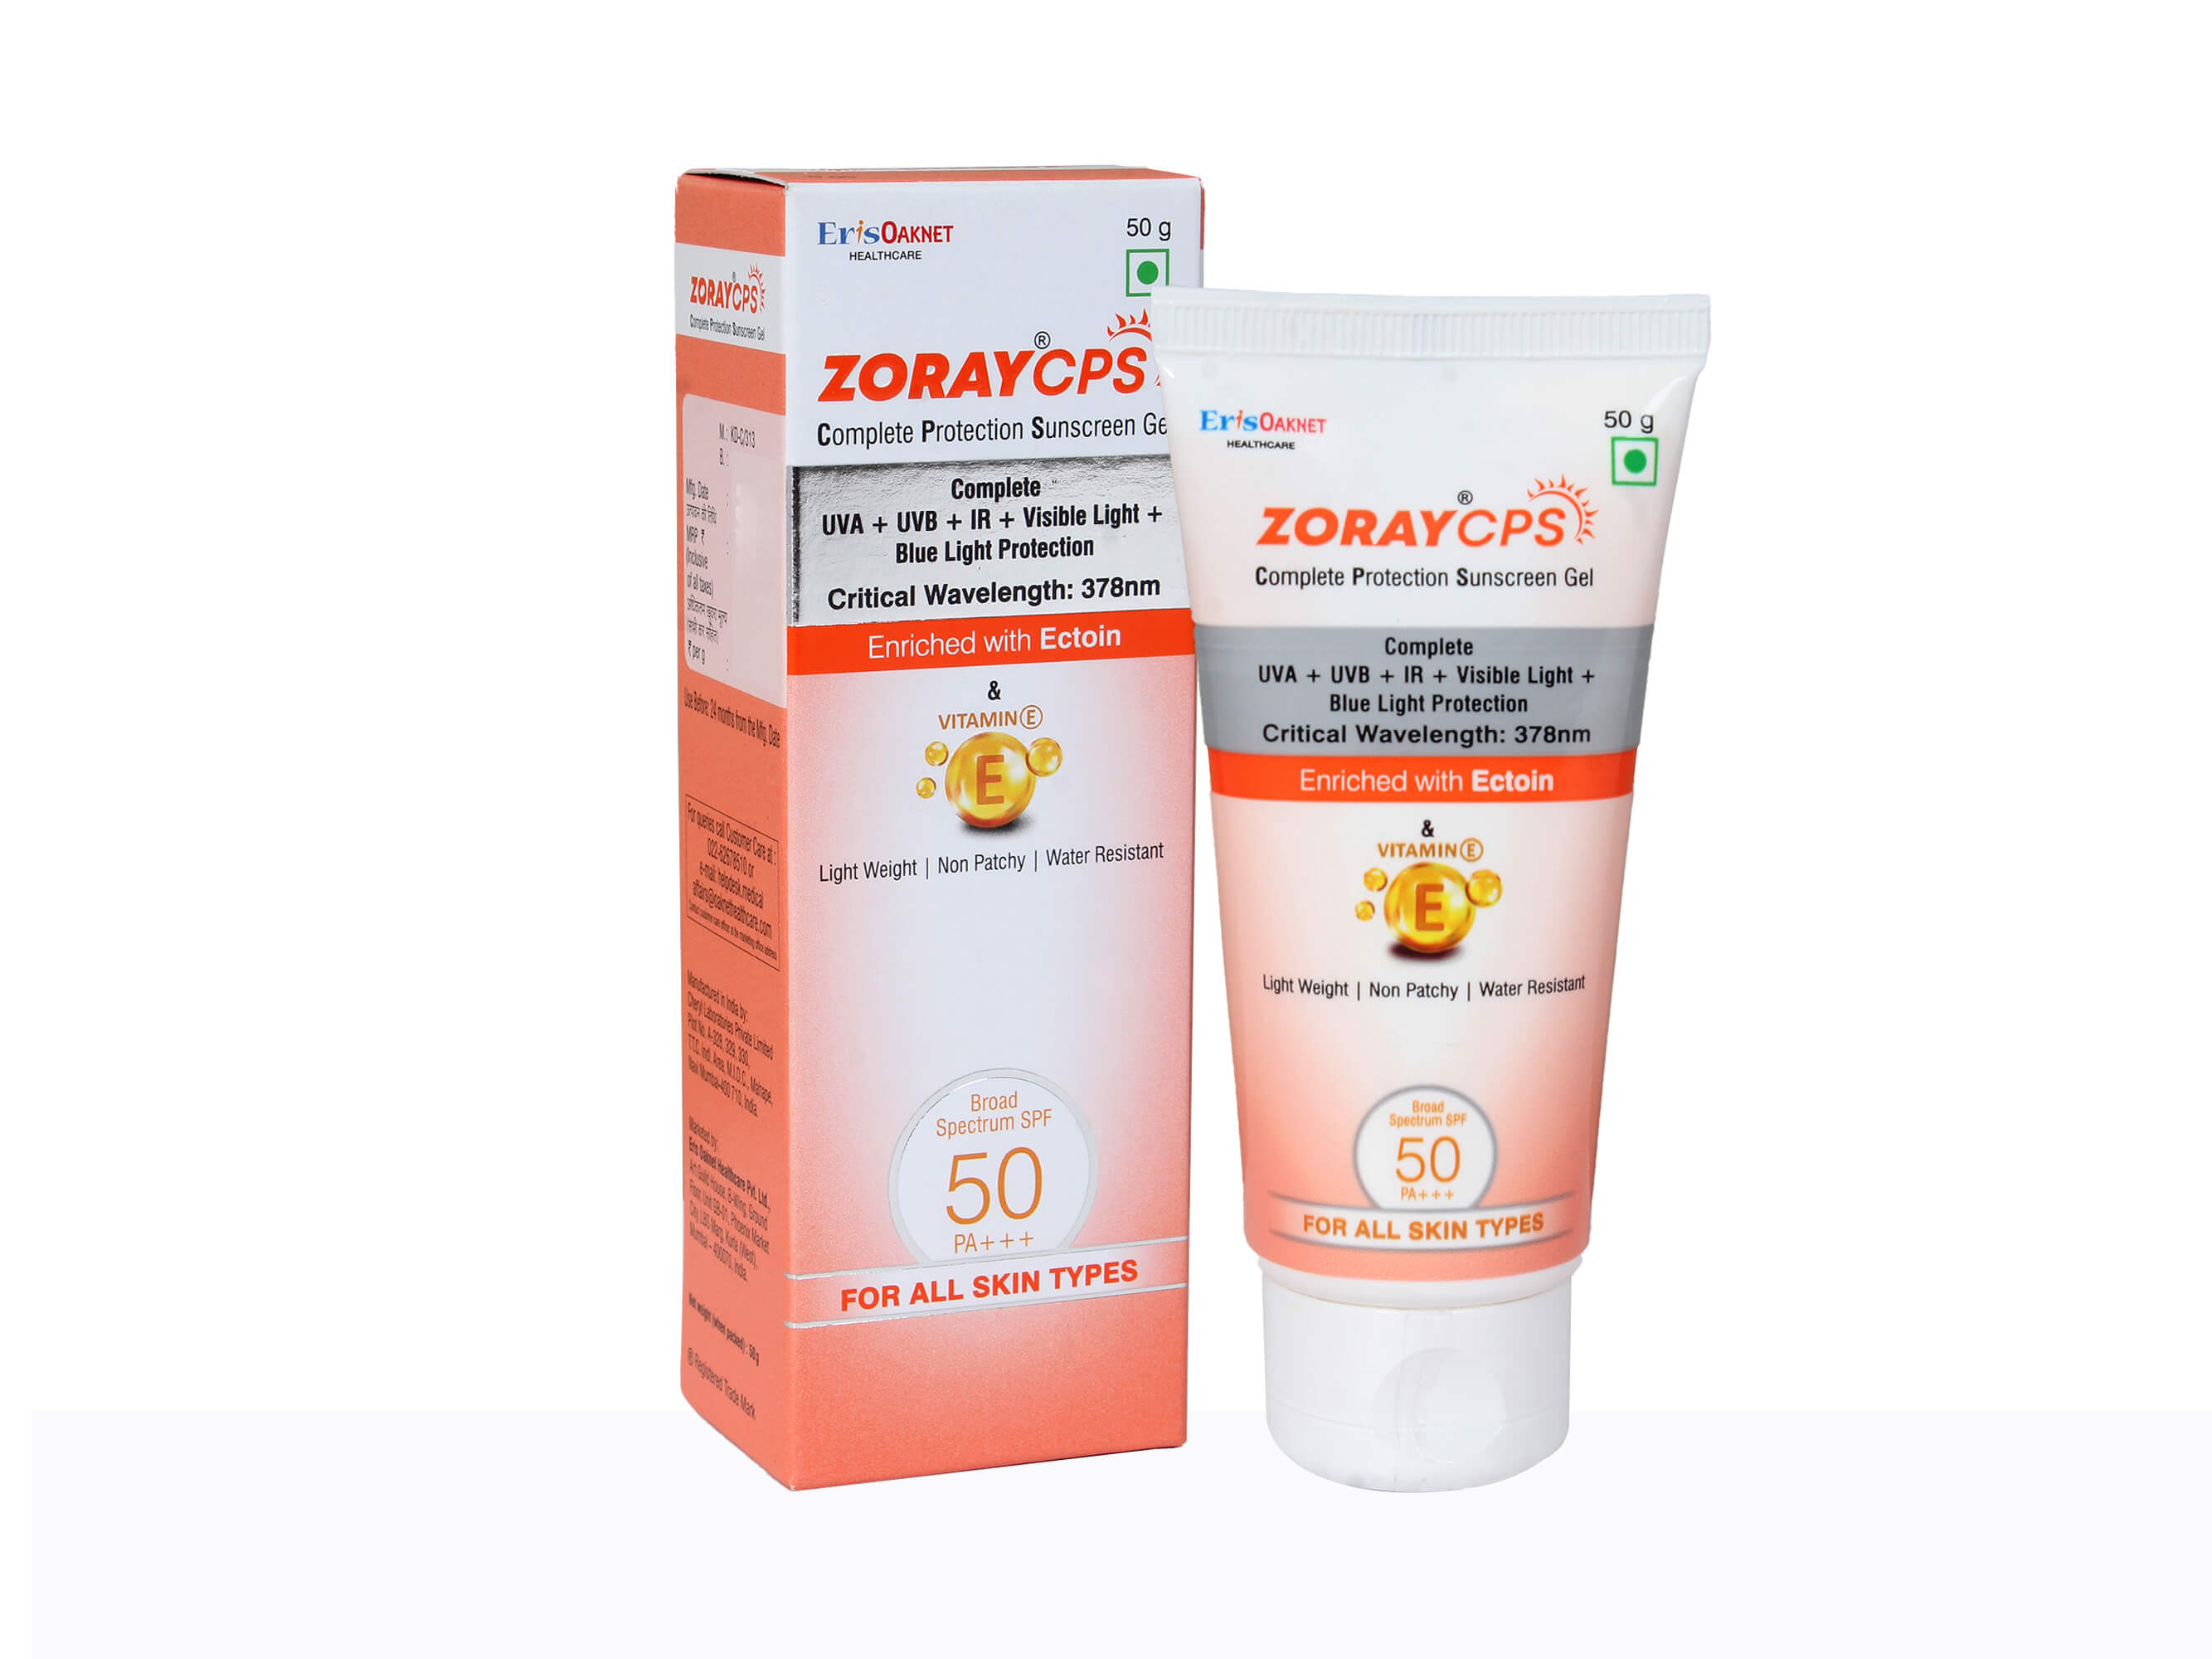 Zoray CPS Sunscreen Spf 50 - Clinikally